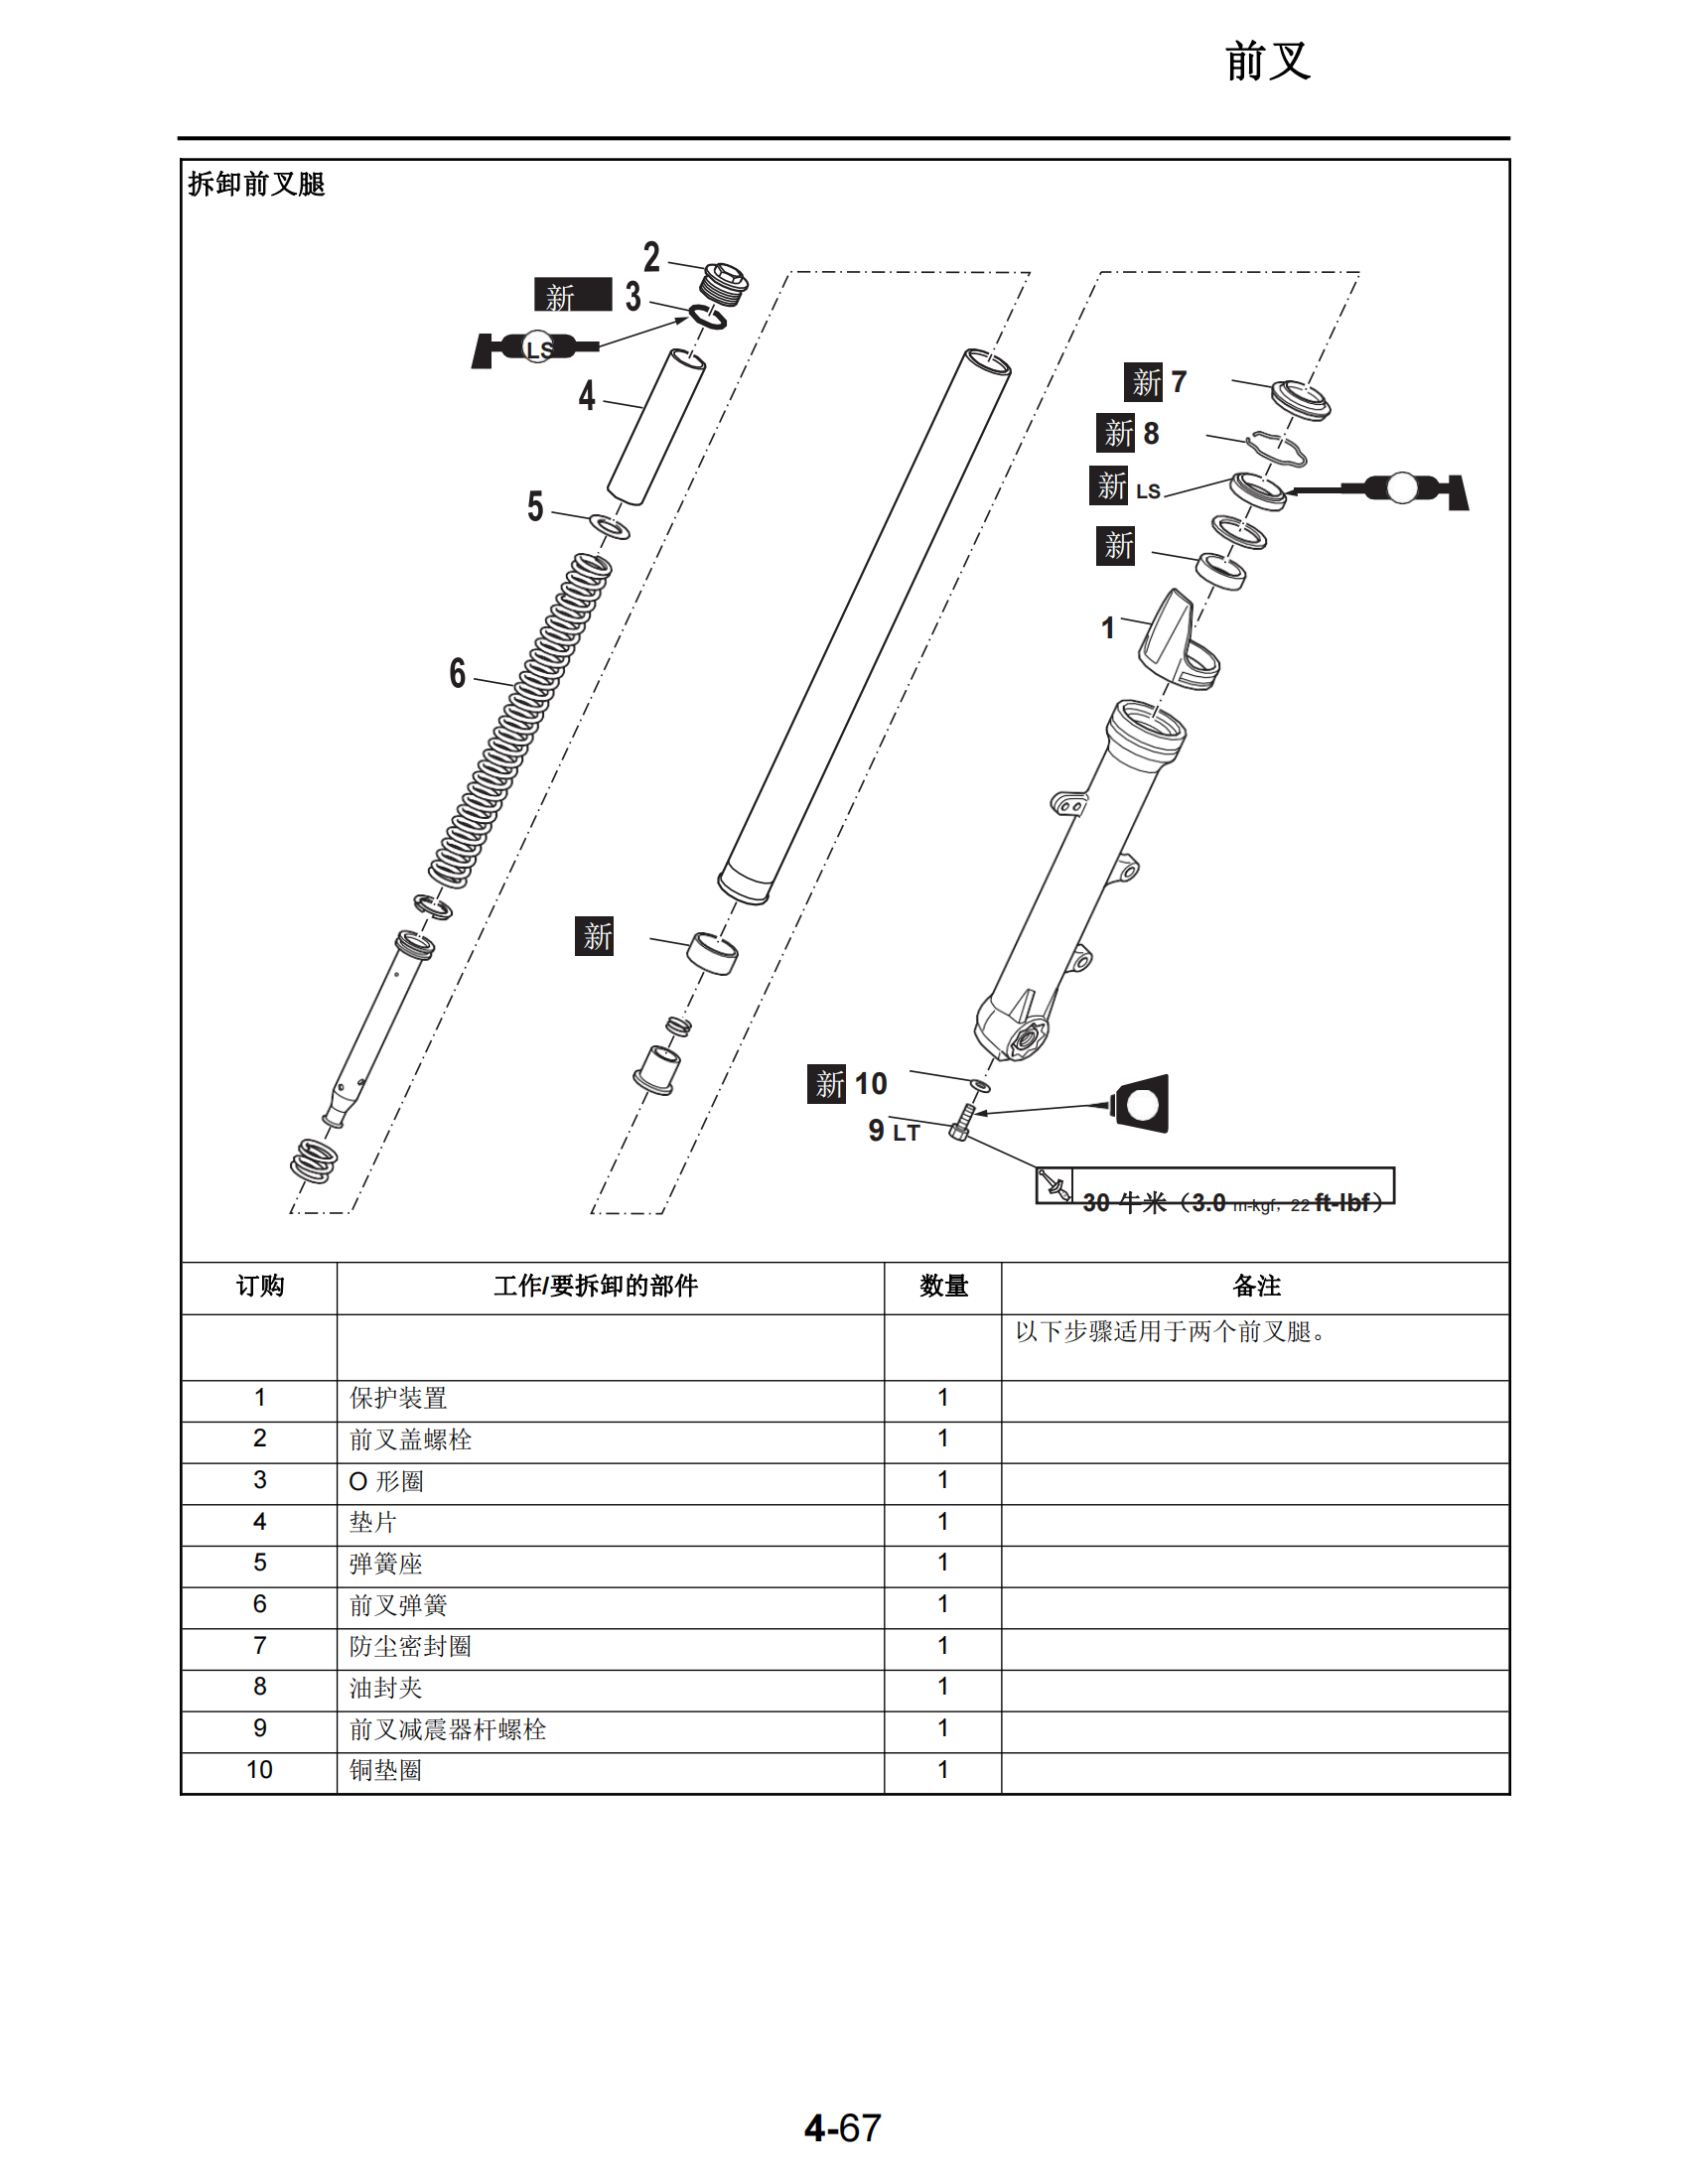 简体中文2014-2015年雅马哈fz07维修手册适用于同年份mt07维修手册插图3